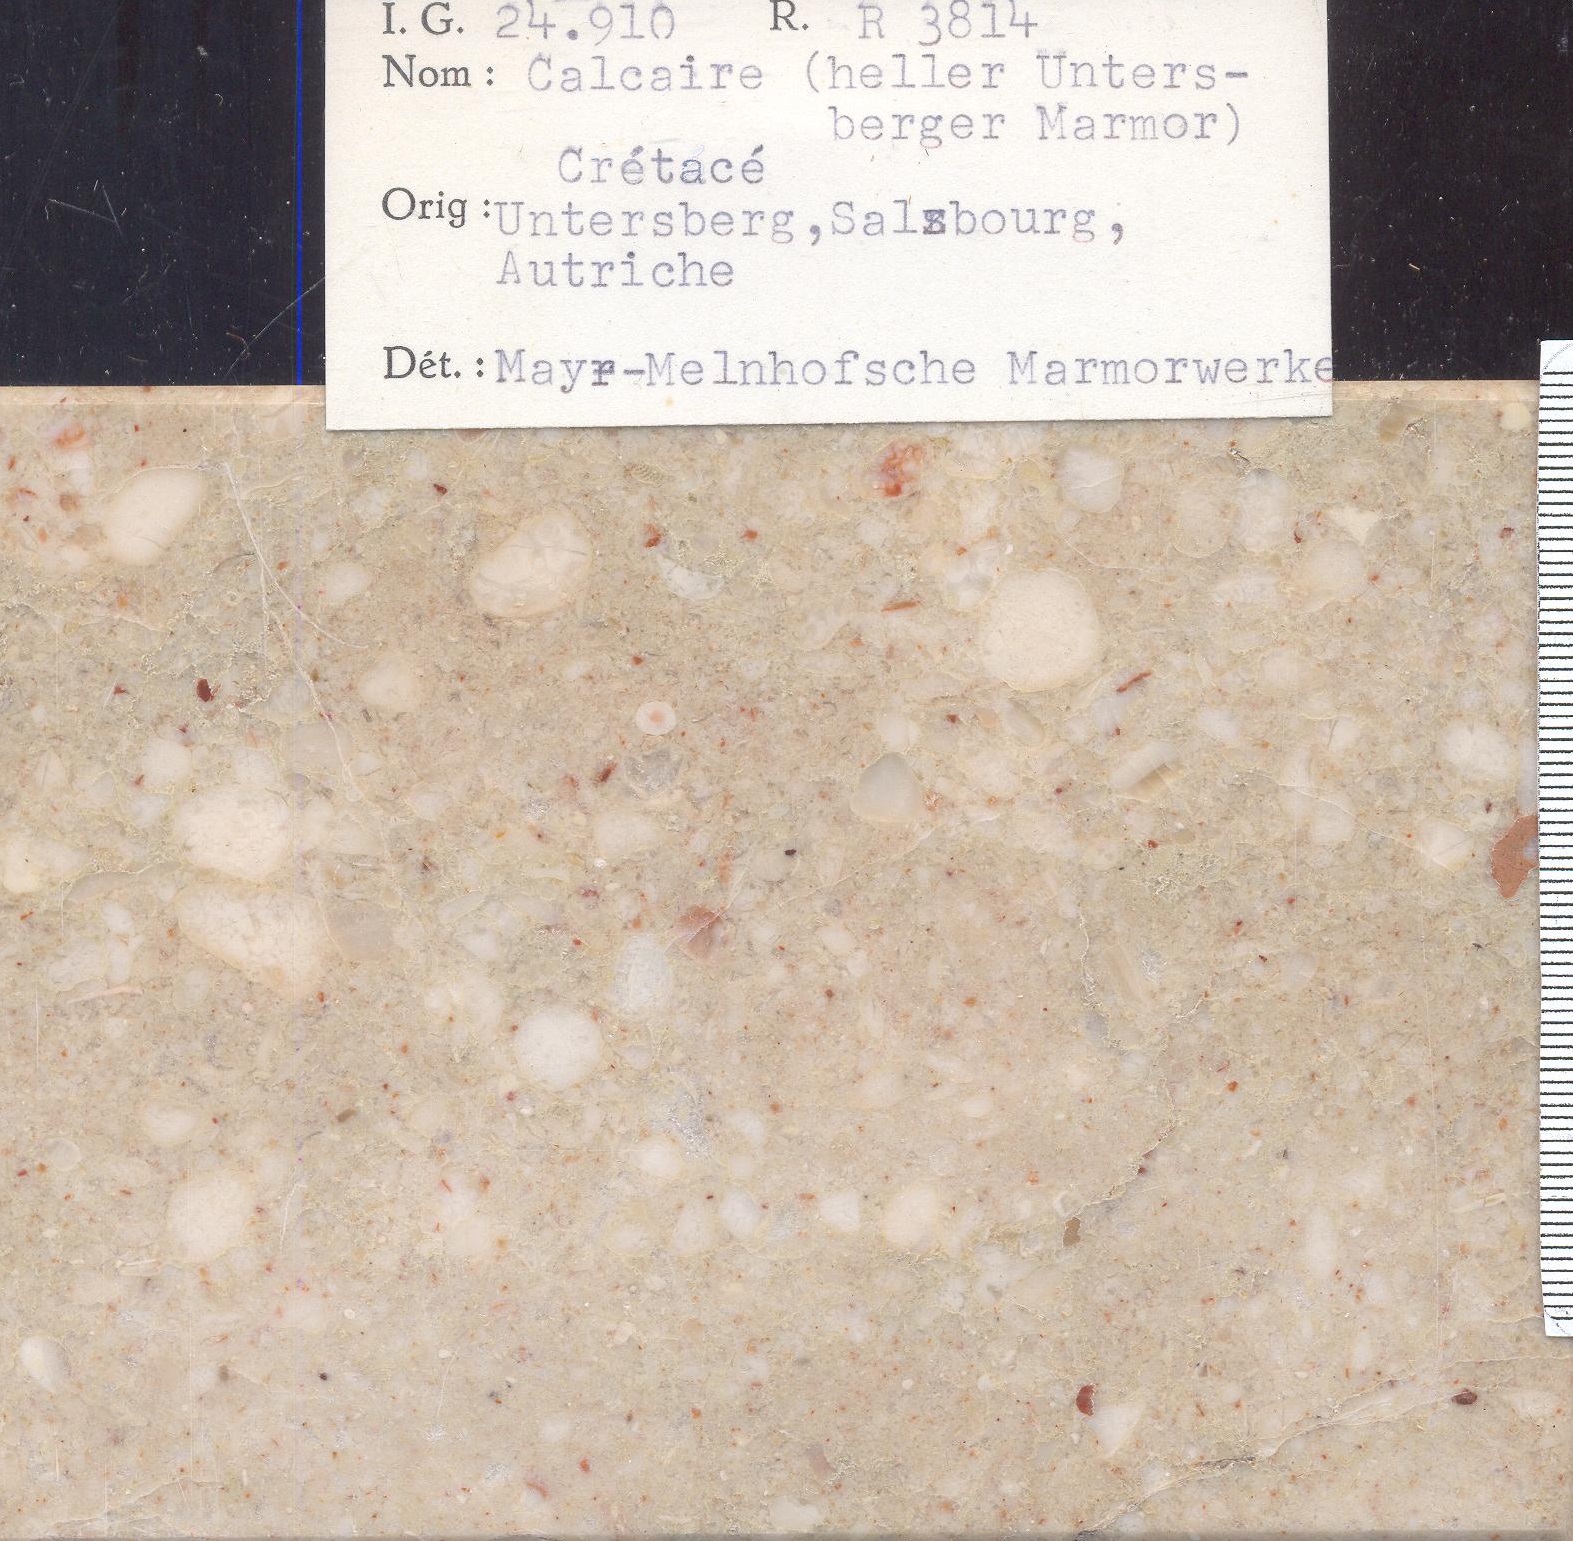 Heller untersberger marmor RR3814